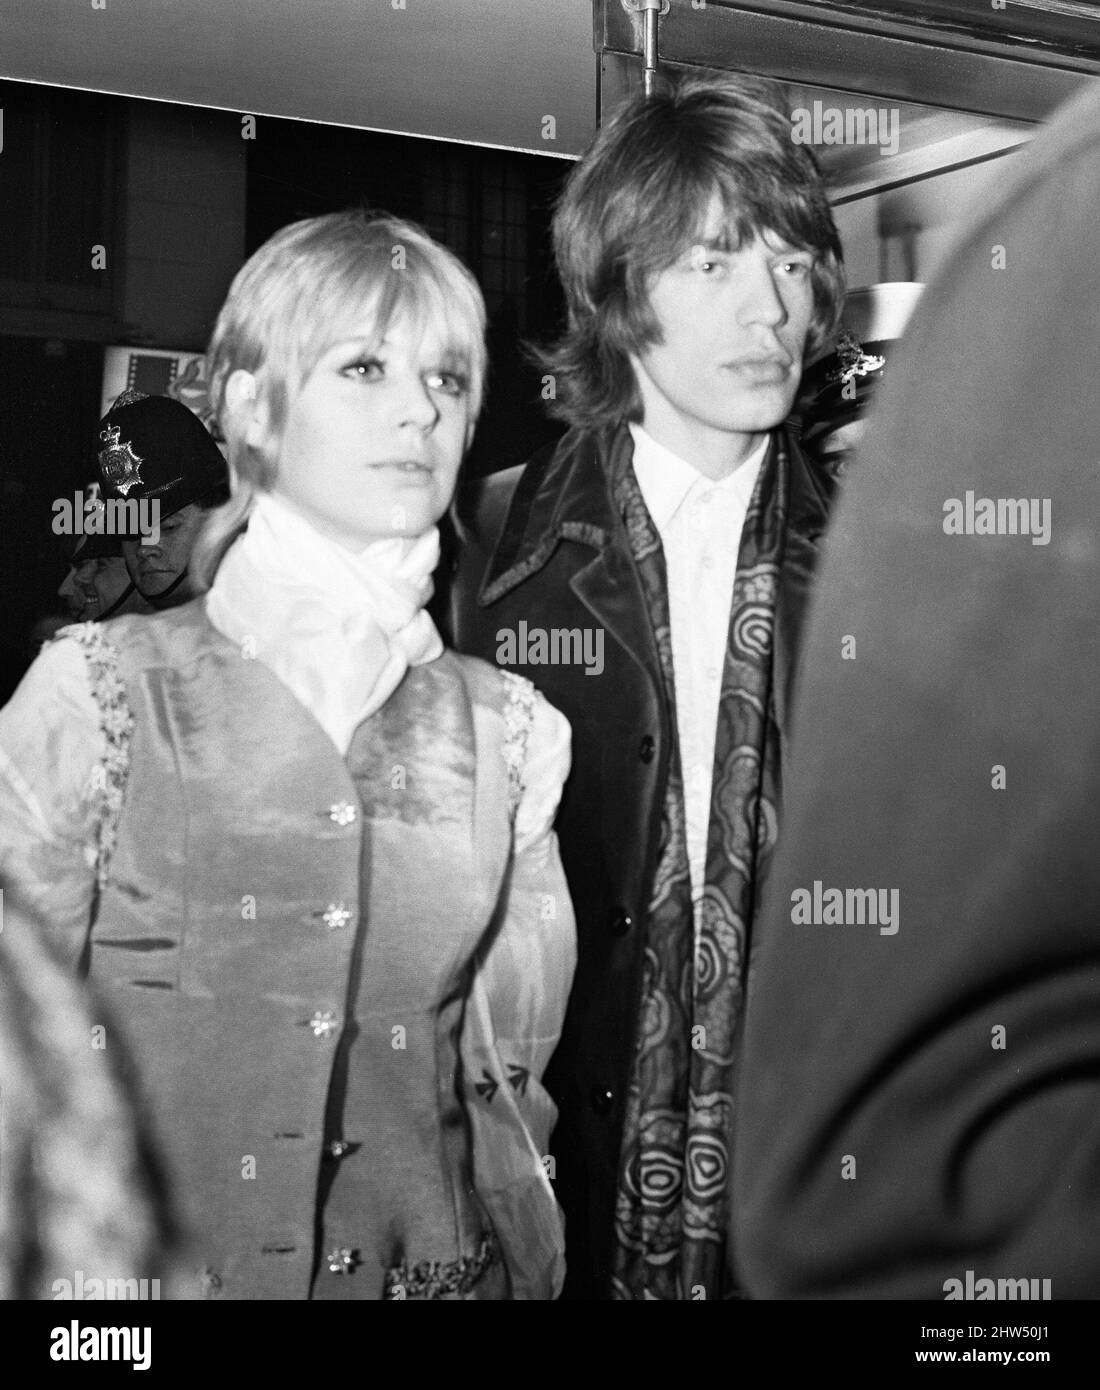 Mick Jagger, chanteur du groupe pop Rolling Stones, photographié avec sa petite amie Marianne Faithfull lors de la première du film de science-fiction Stanley Kubrik « 2001 A Space Odyssey » à Londres.10th mai 1968. Banque D'Images